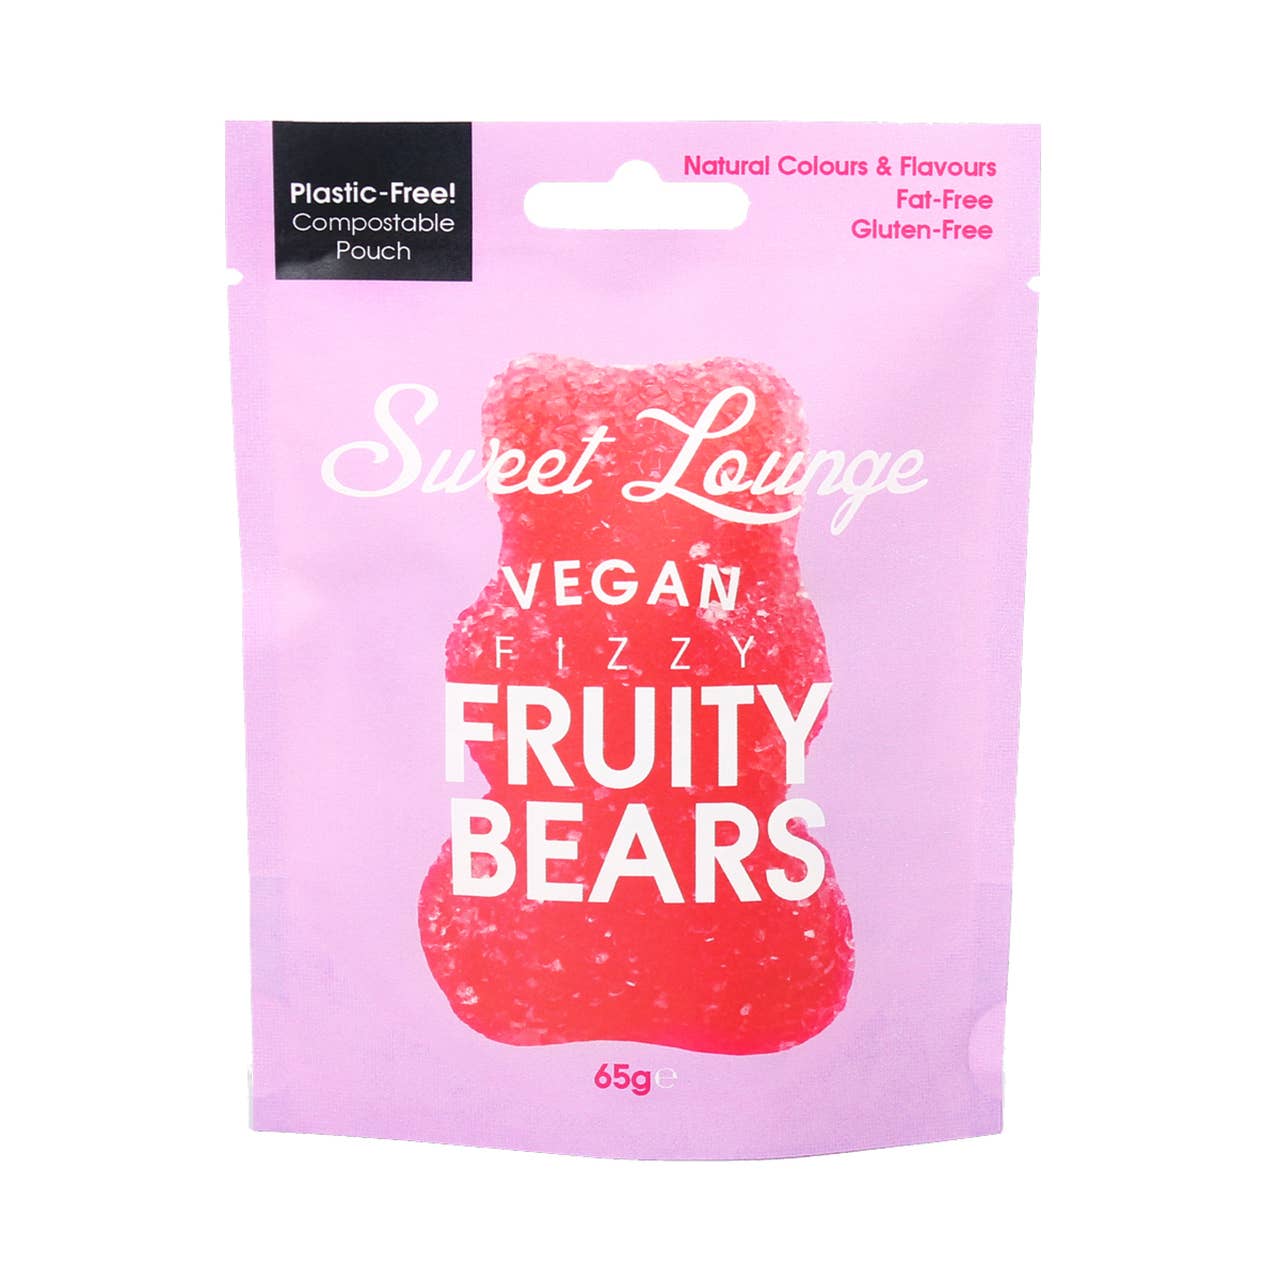 Fizzy Fruity Bears